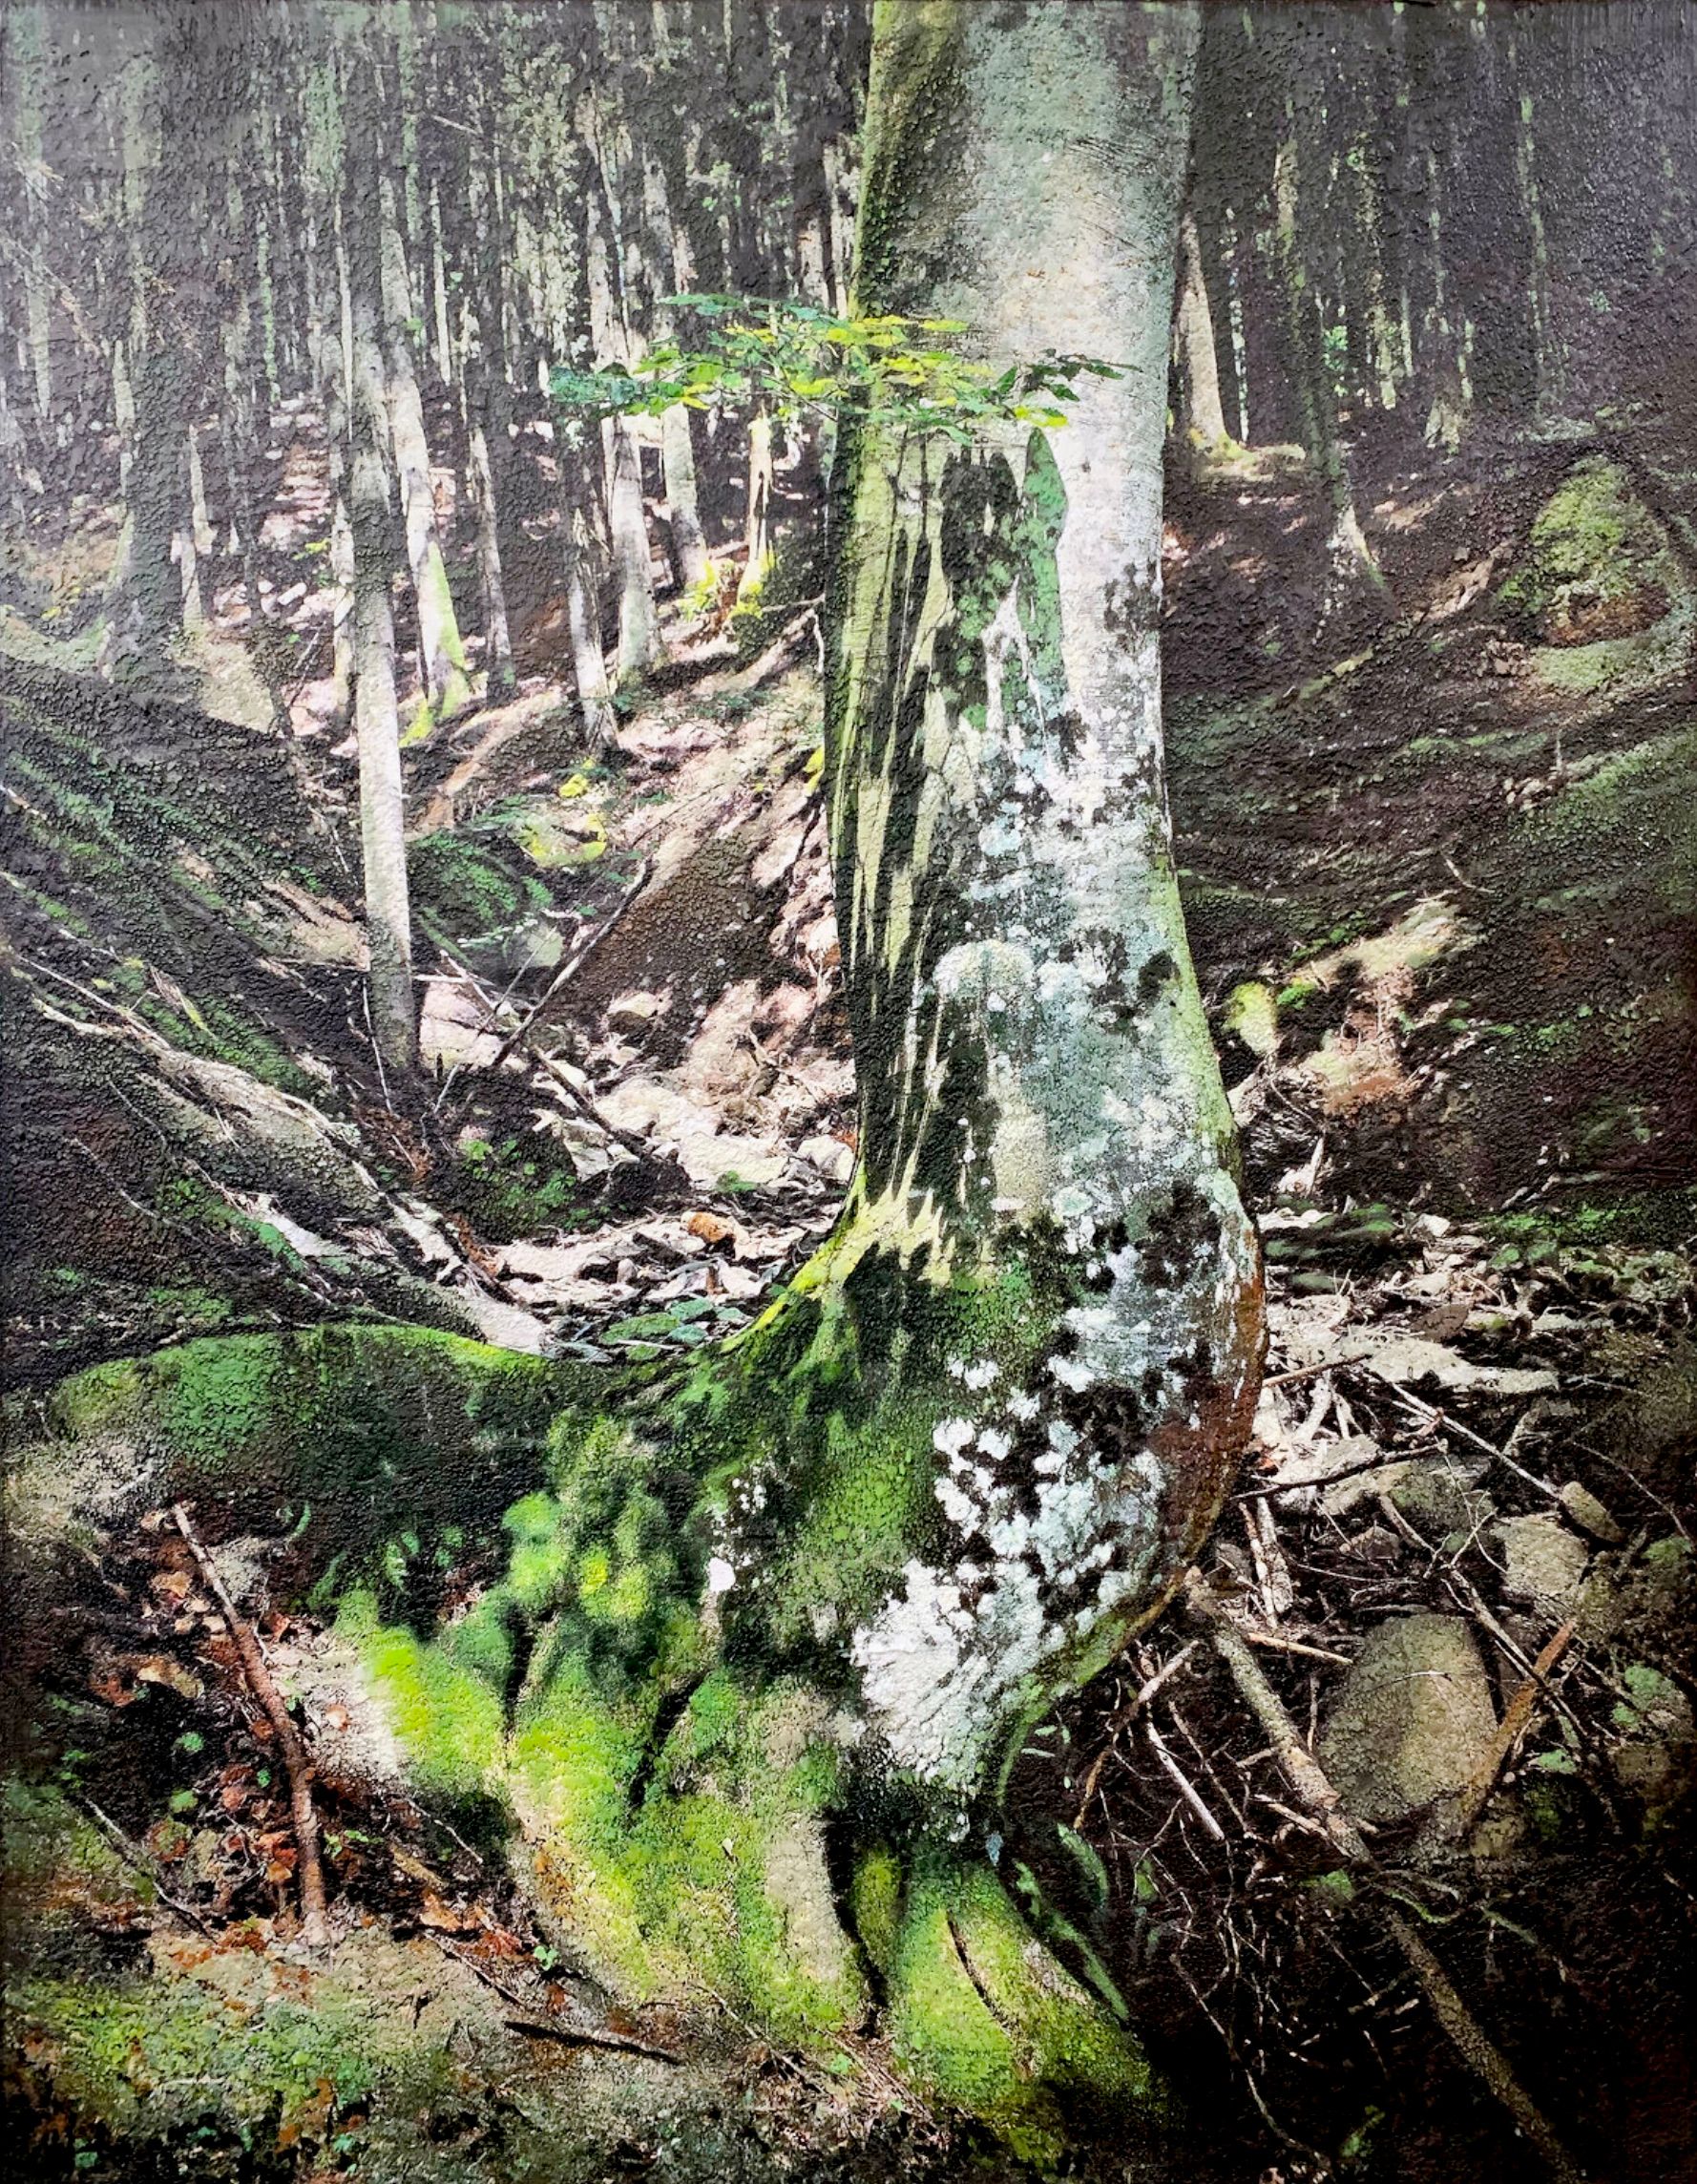 Karin Vermeer's "Charred tree Brienenoord island" ist eine digitale Kombination und Bearbeitung von Fotografien, Gemälden und Collage zu neuen, Das Gemälde ist ein einzigartiges Kunstwerk und hat viel Struktur und ist sehr detailliert. In diese Waldlandschaft kann man fast eintauchen.